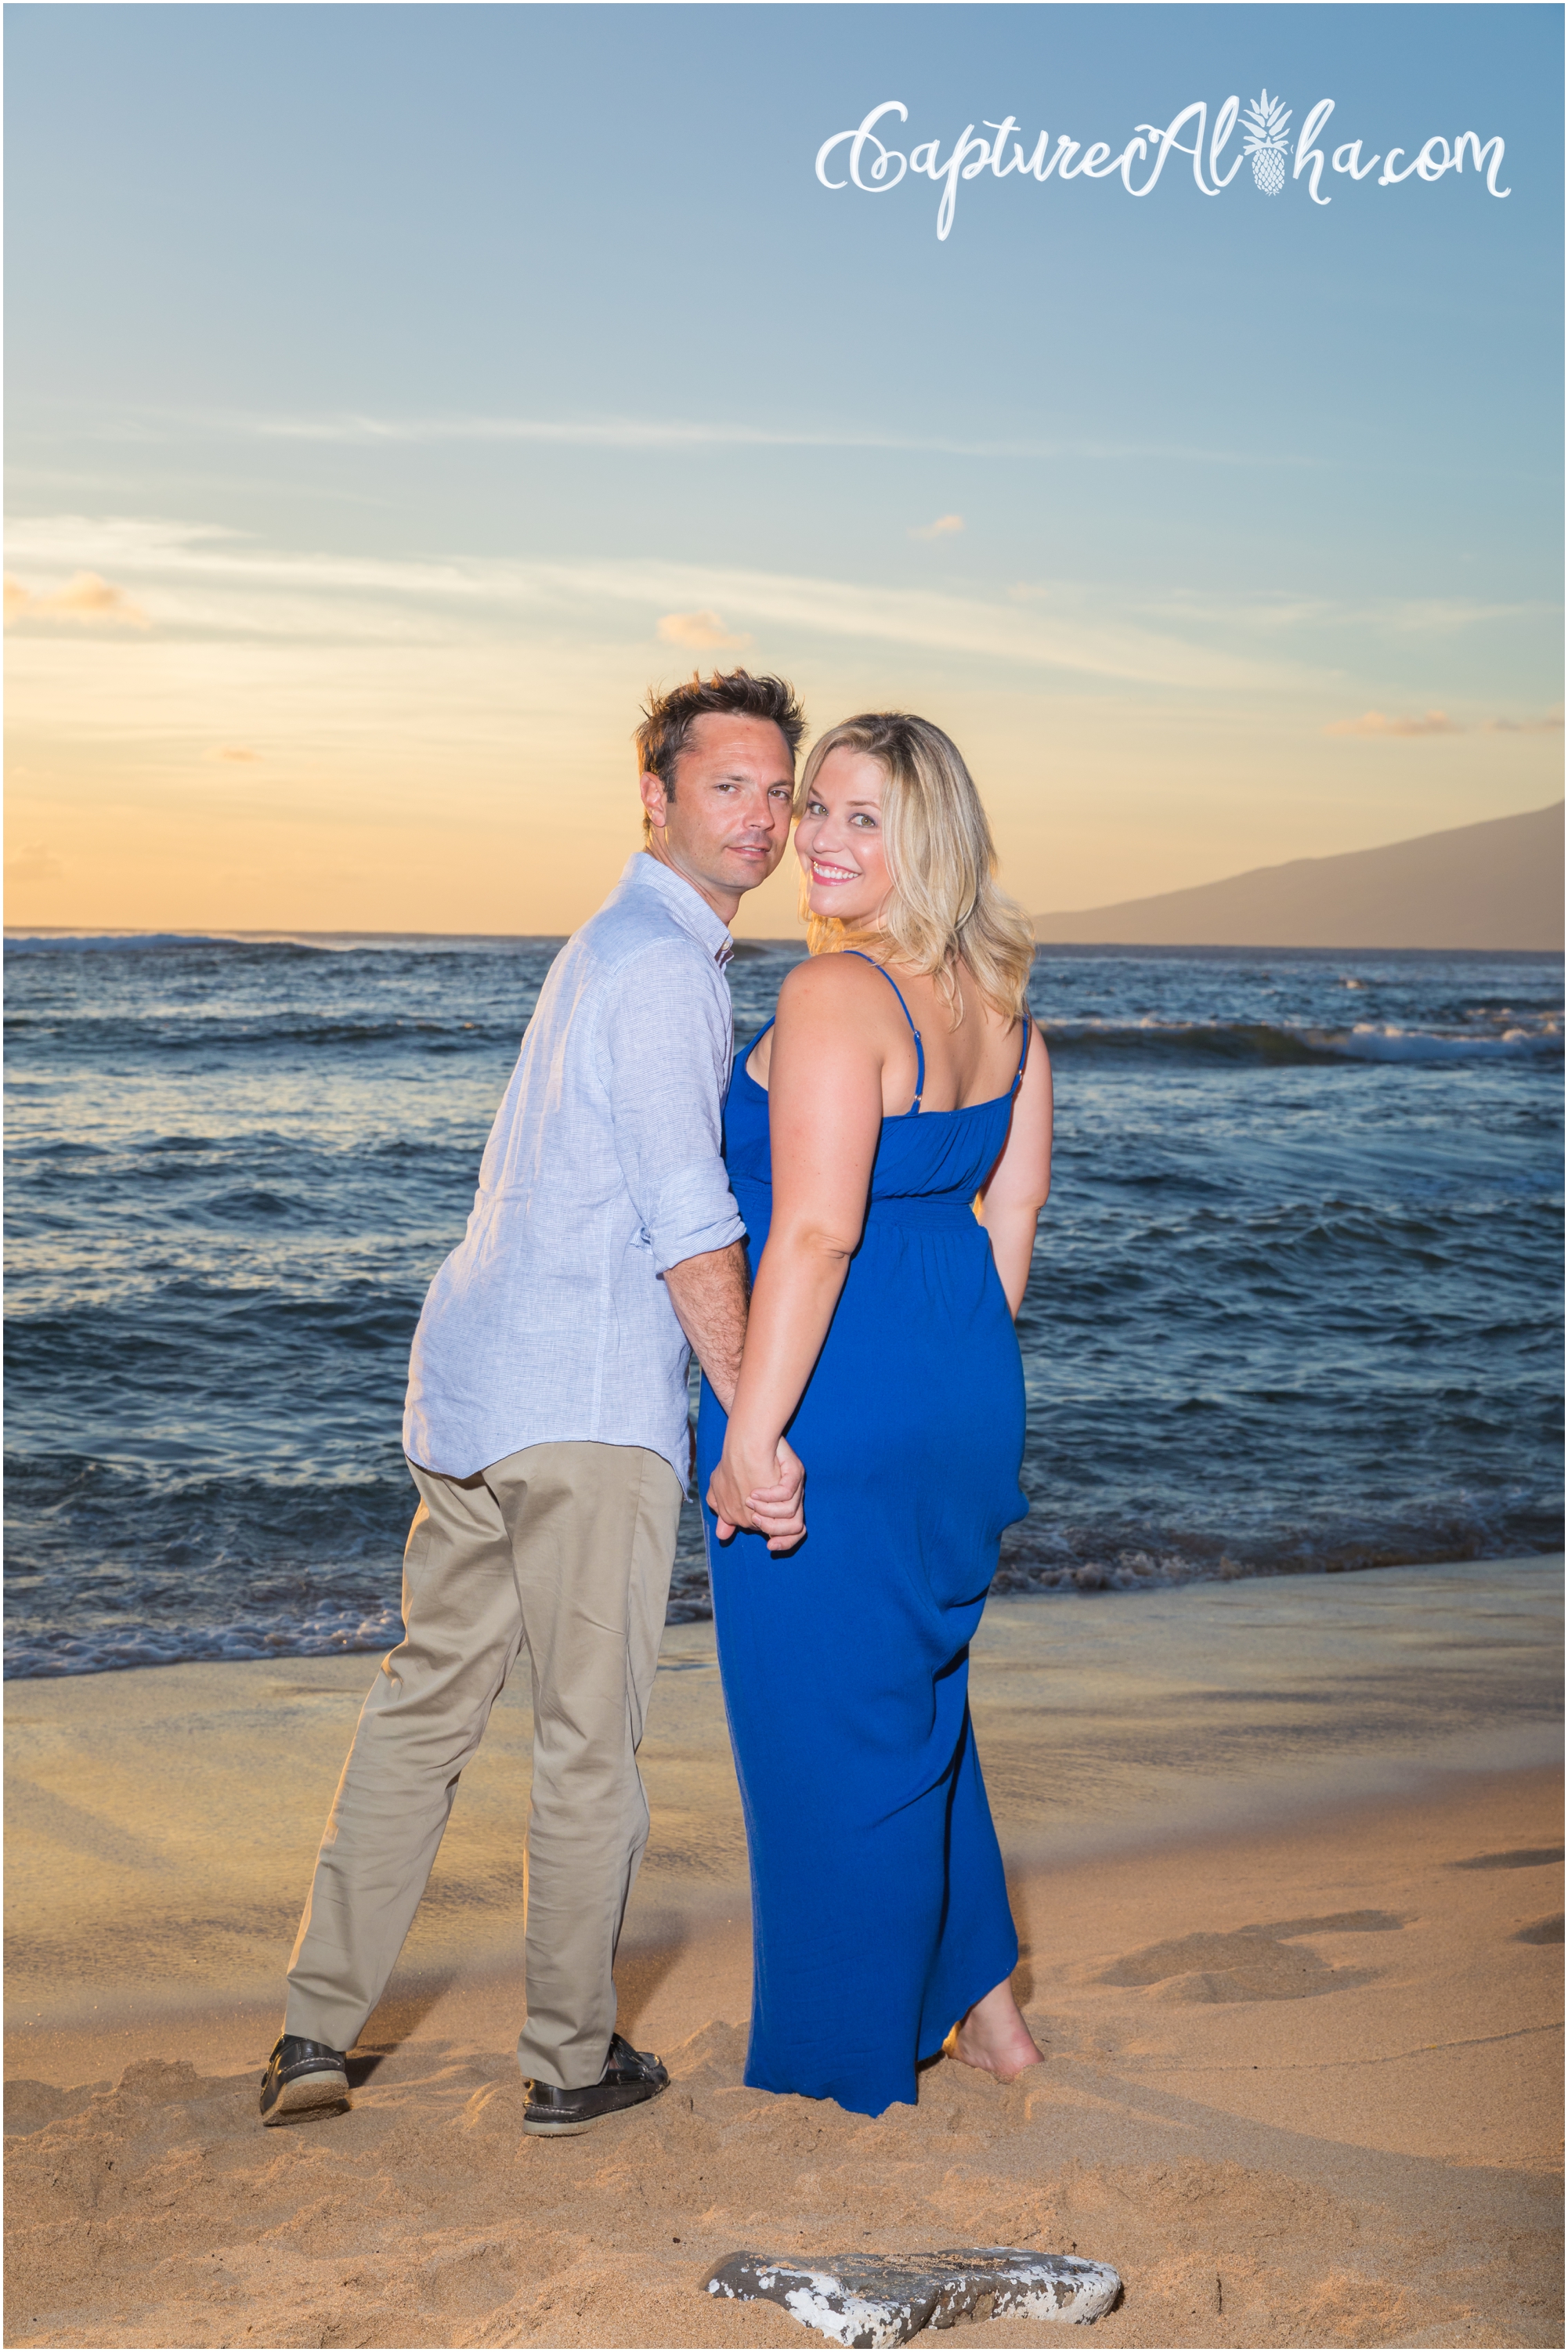 Maui Family Photography at Sunset at Kapalua Bay